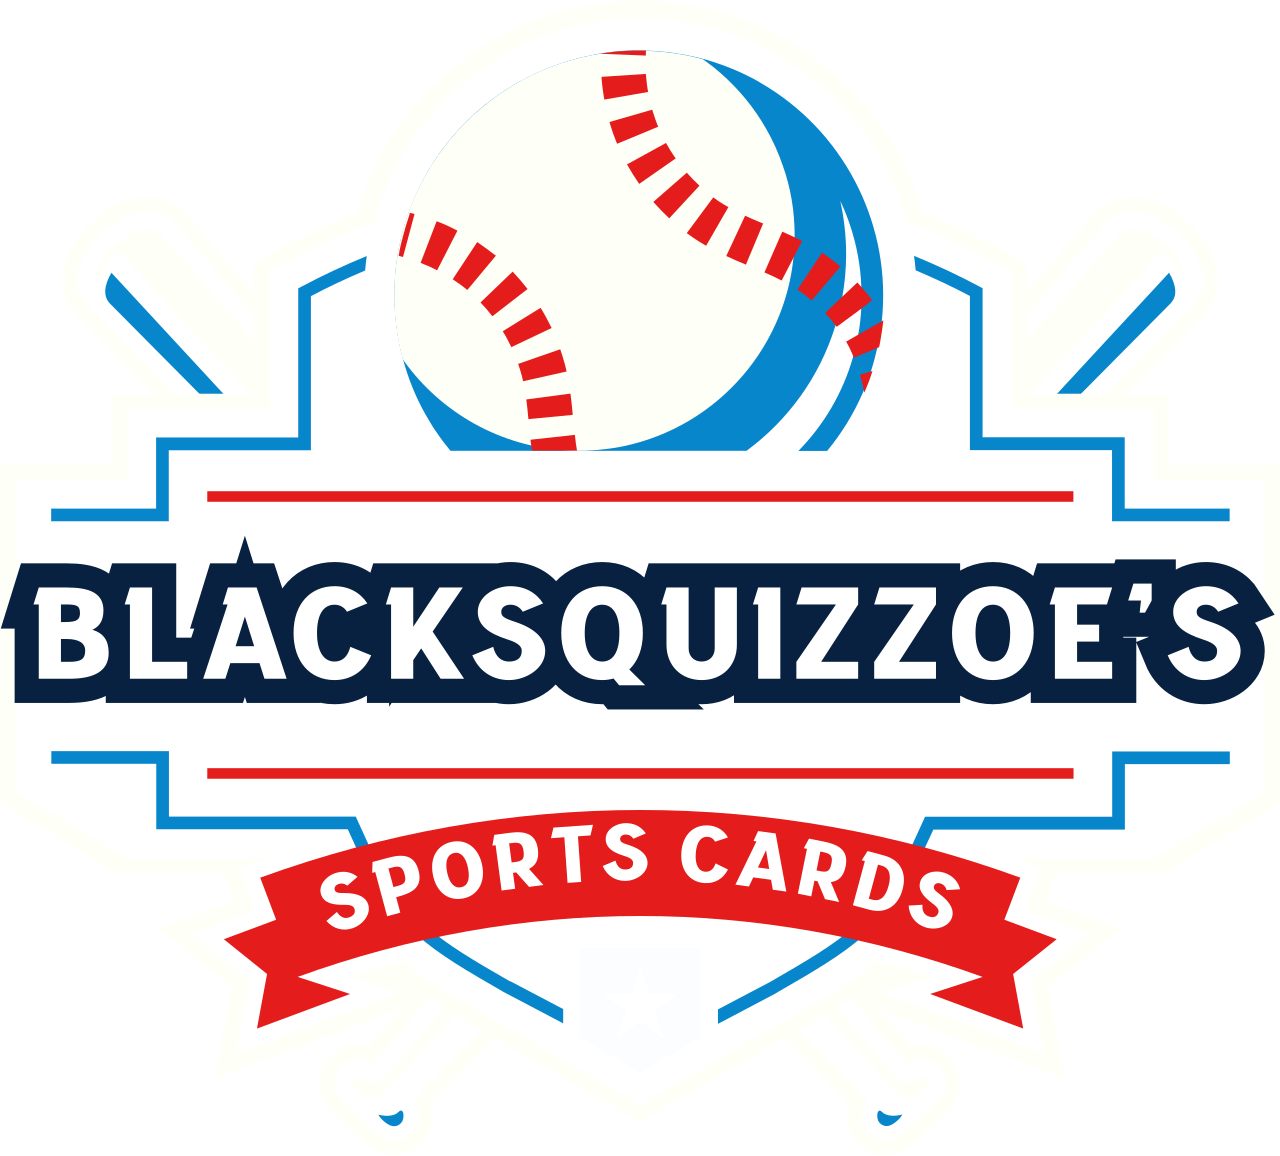 BLACKSQUIZZOE'S's logo